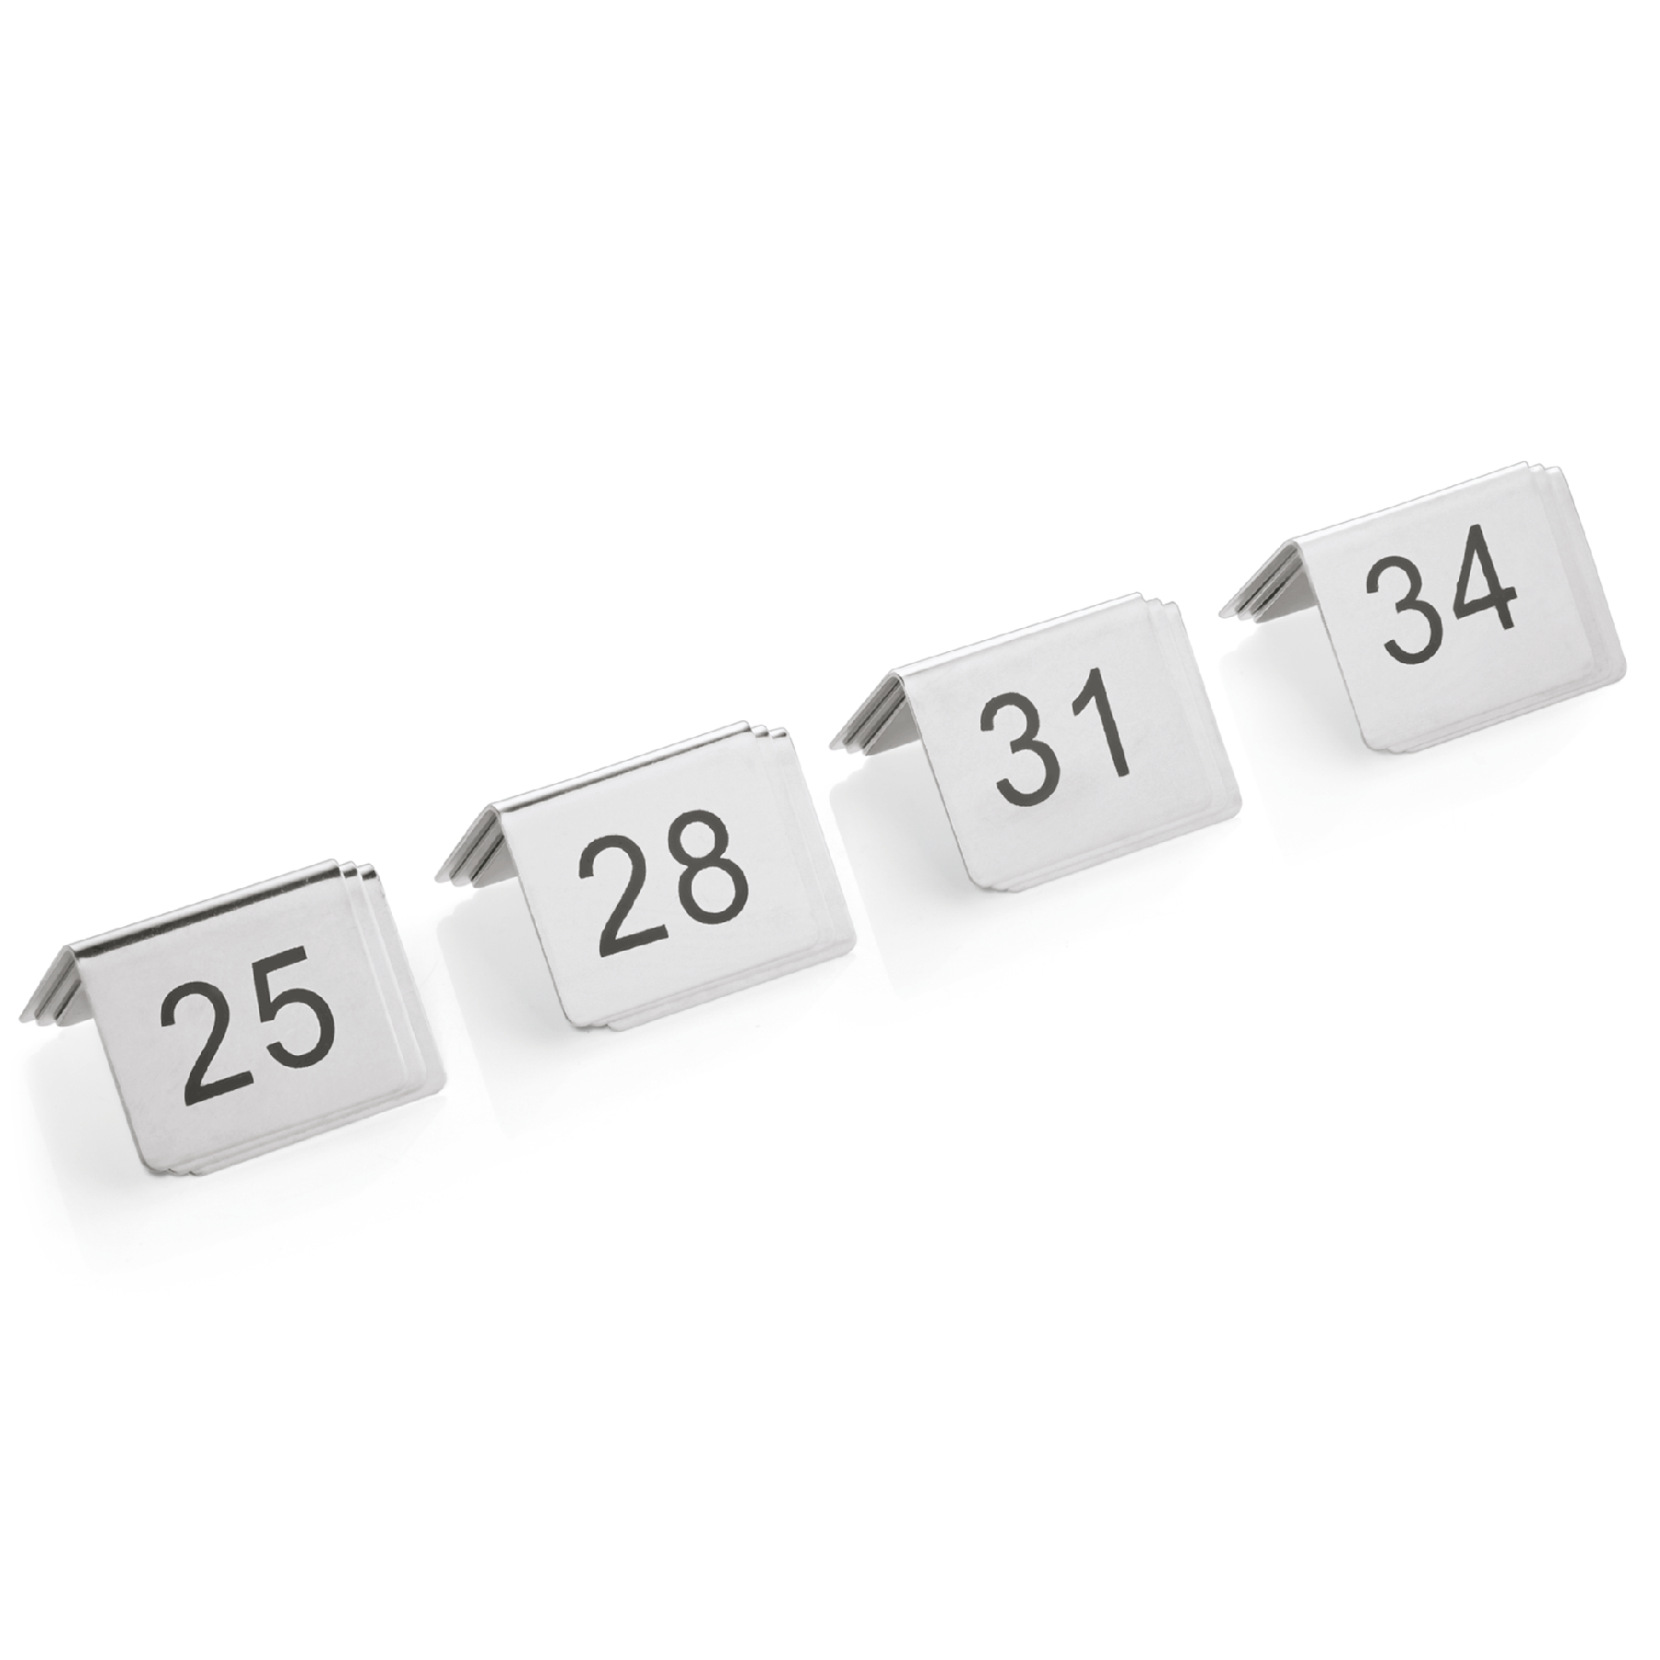 Tischnummernschild Set, 12-teilig, 25-36, Chromnickelstahl